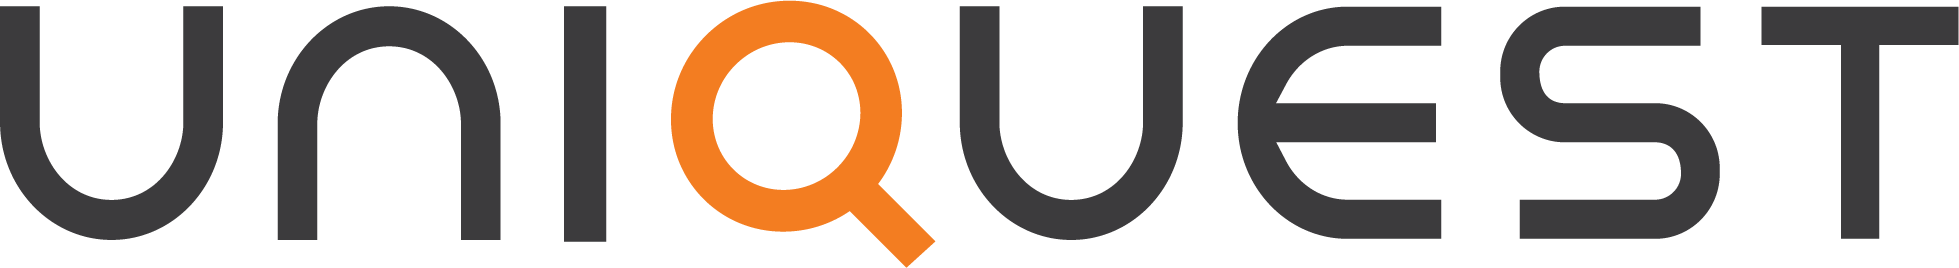 uniquest logo-1